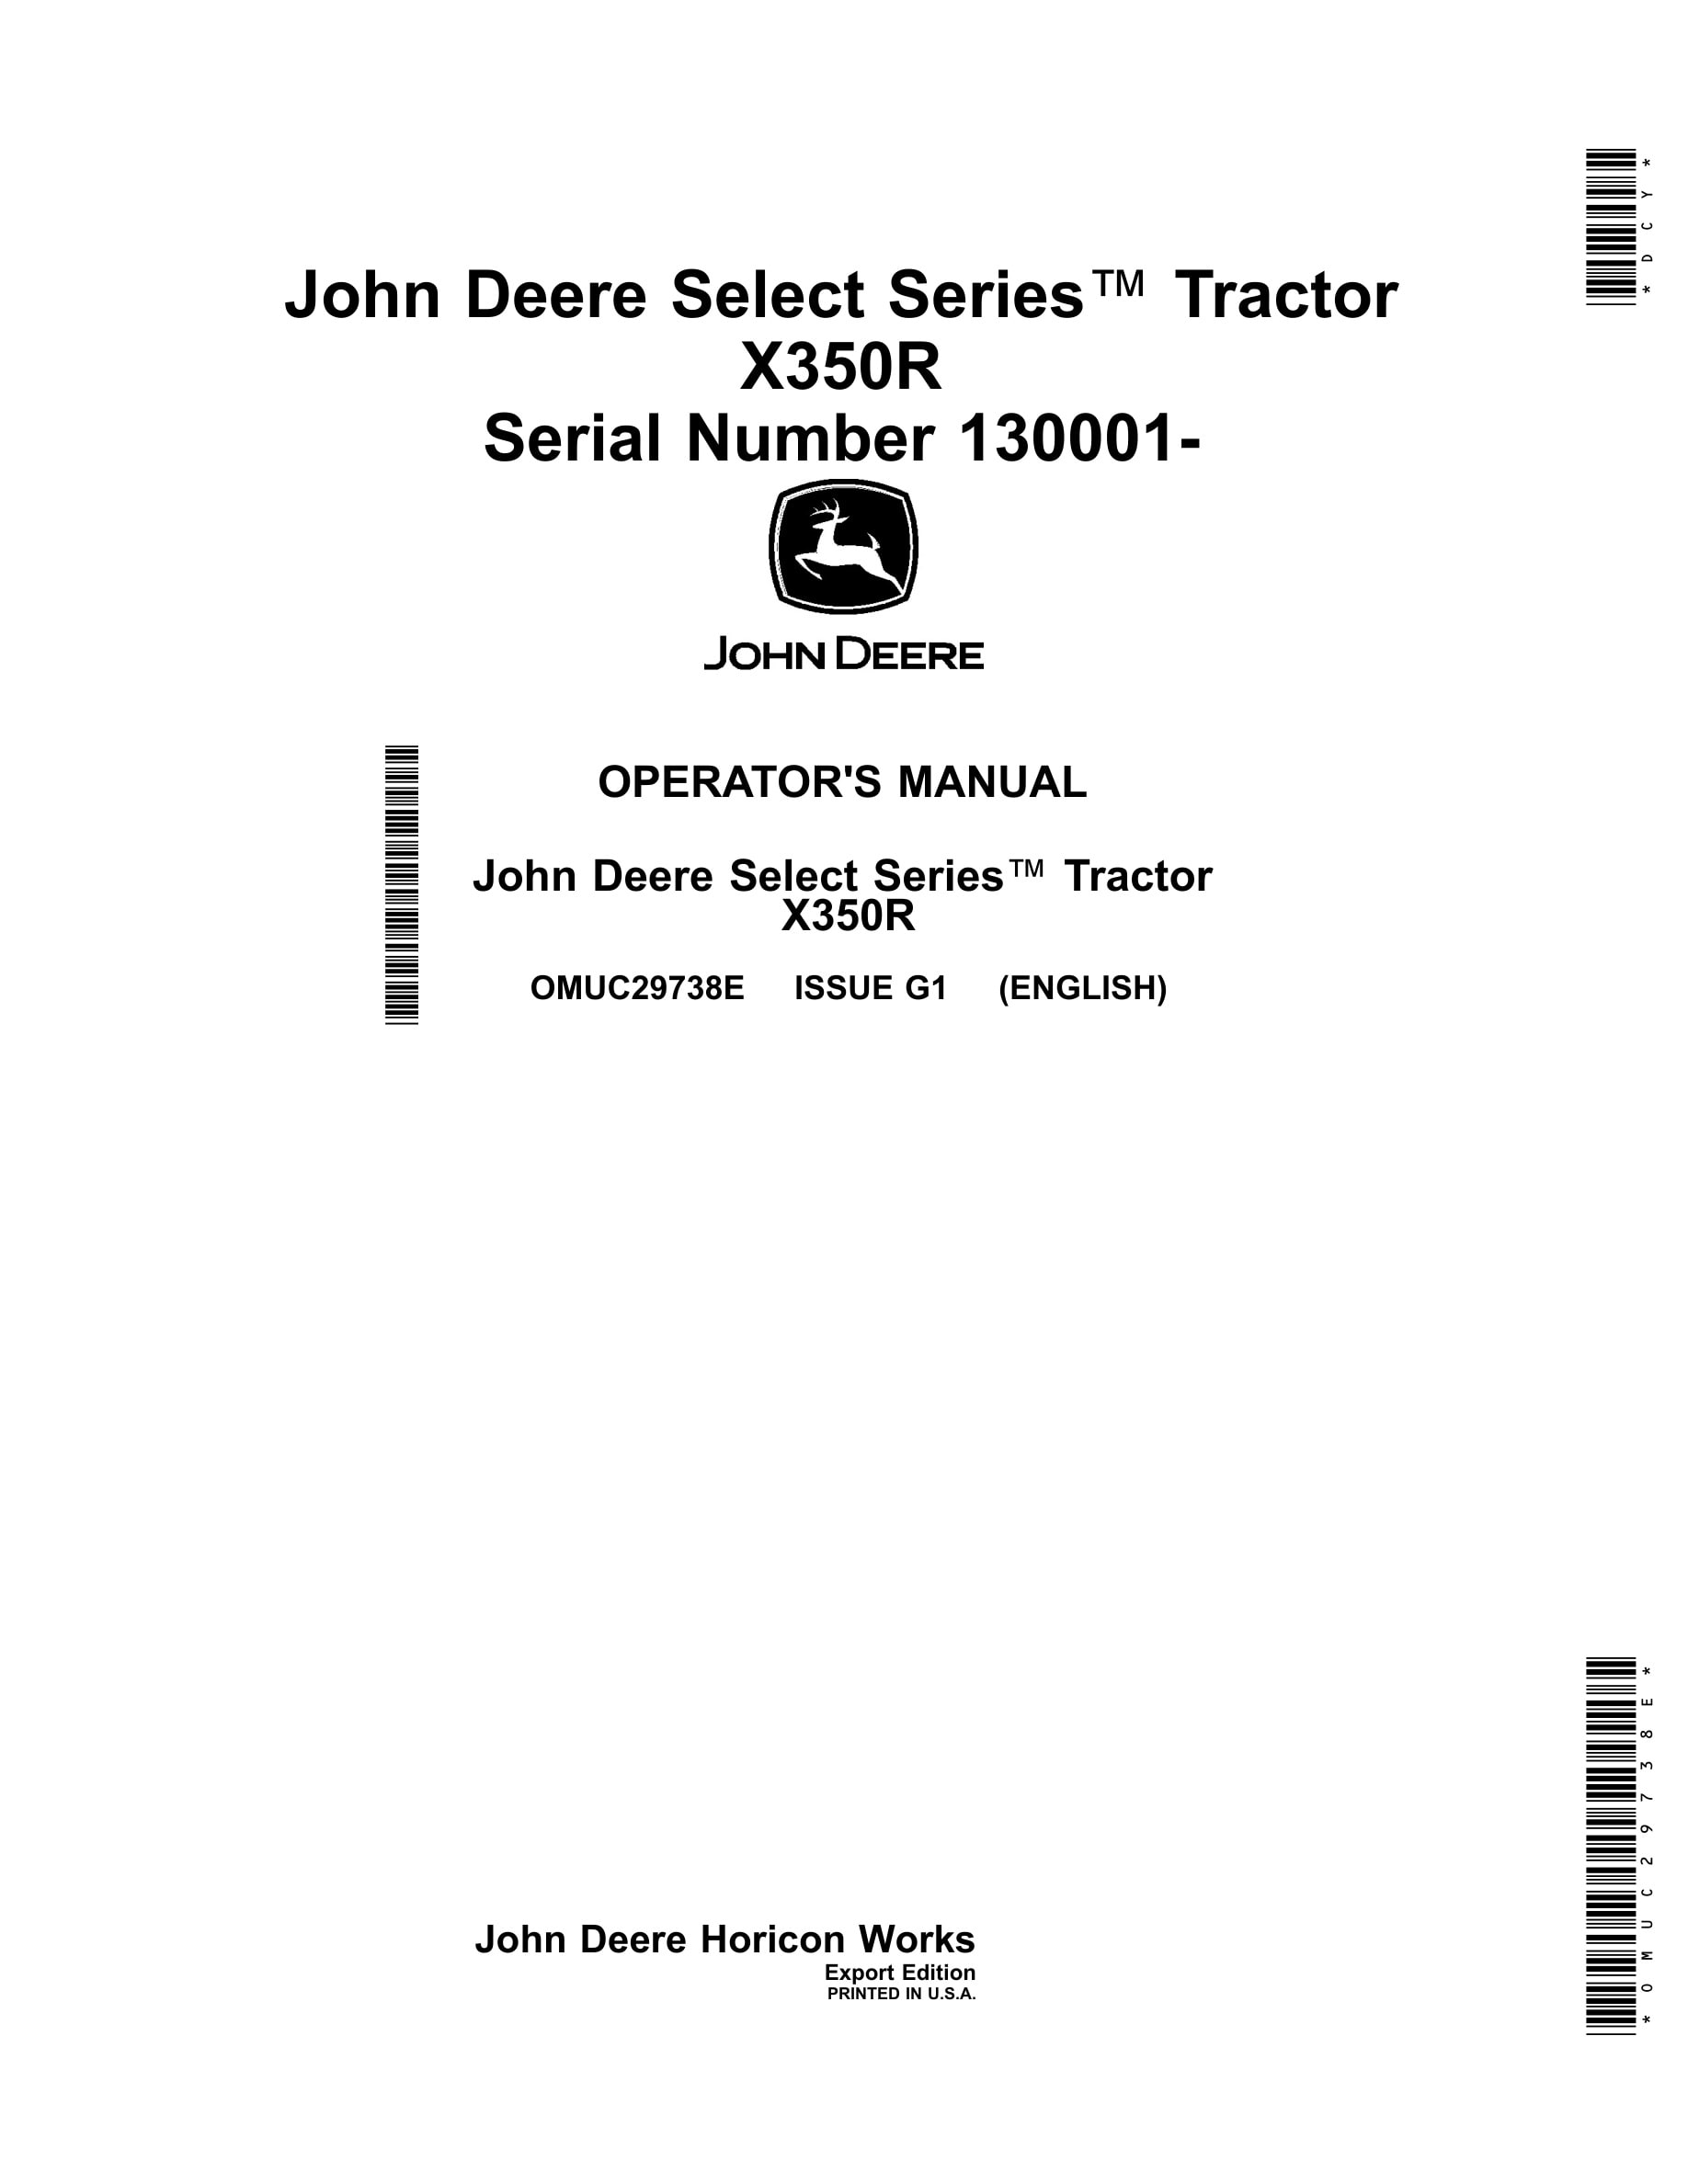 John Deere X350r Tractors Operator Manuals OMUC29738e-1